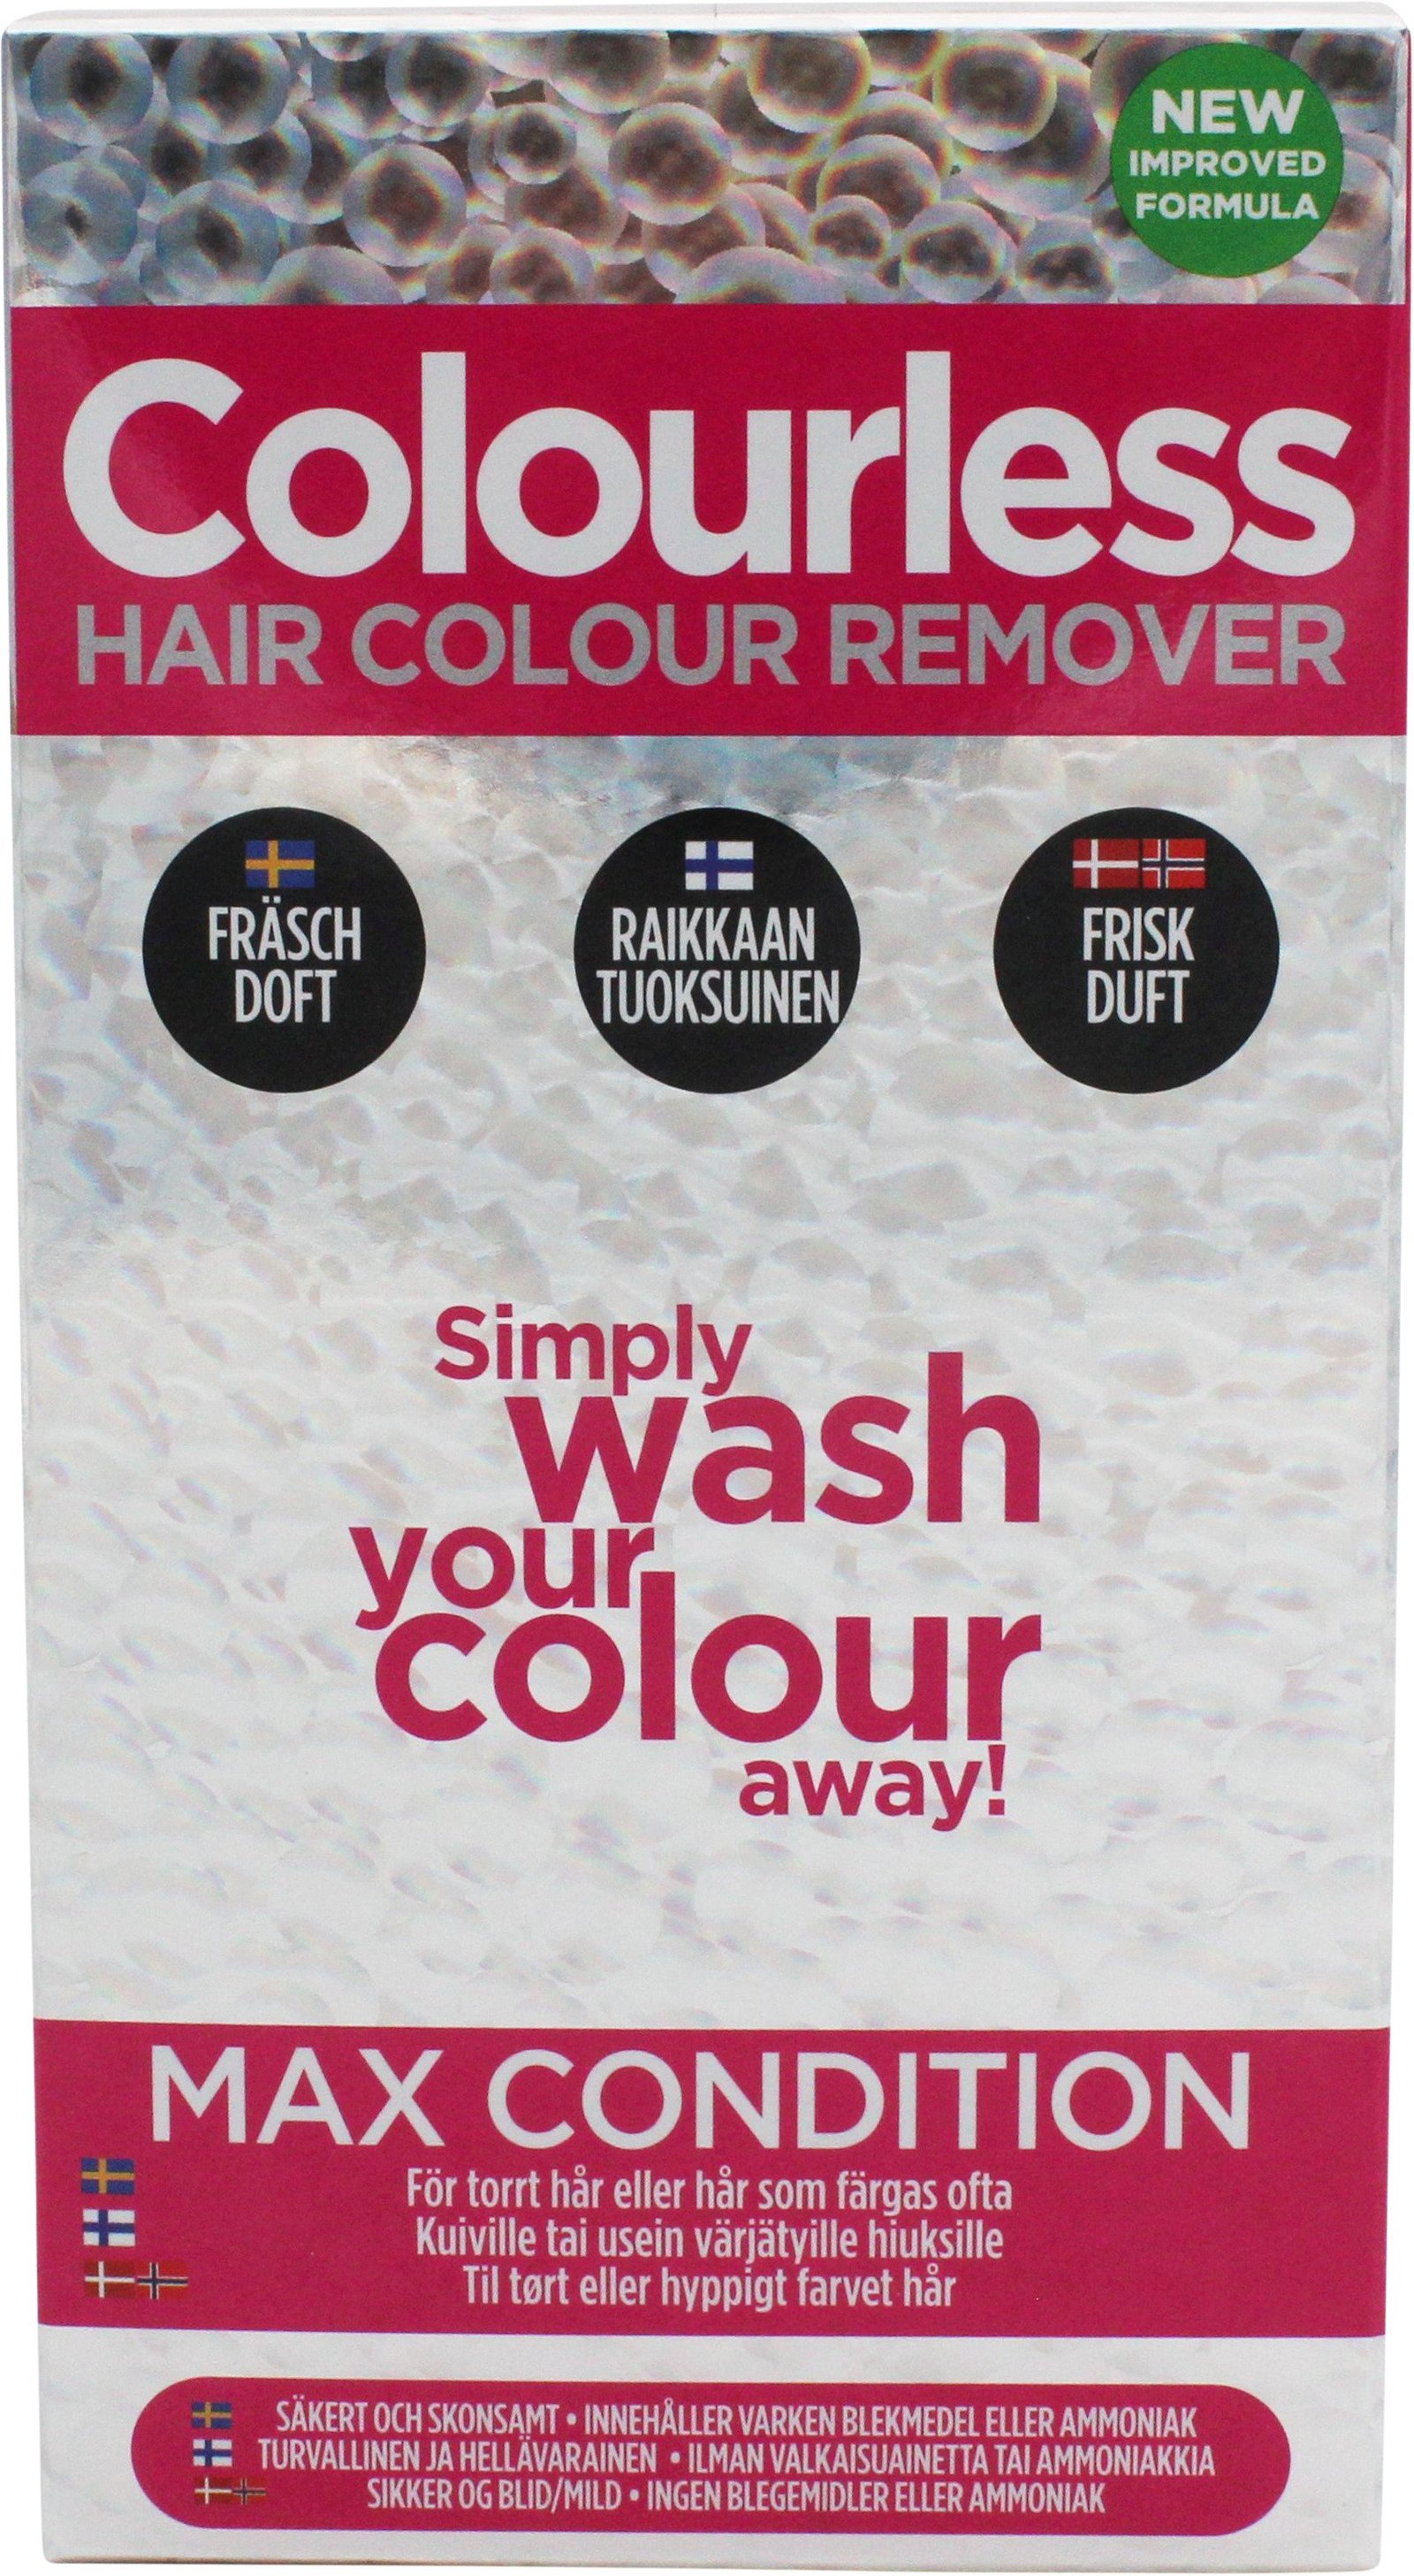 Colourless Haircolour Remover Max Condition